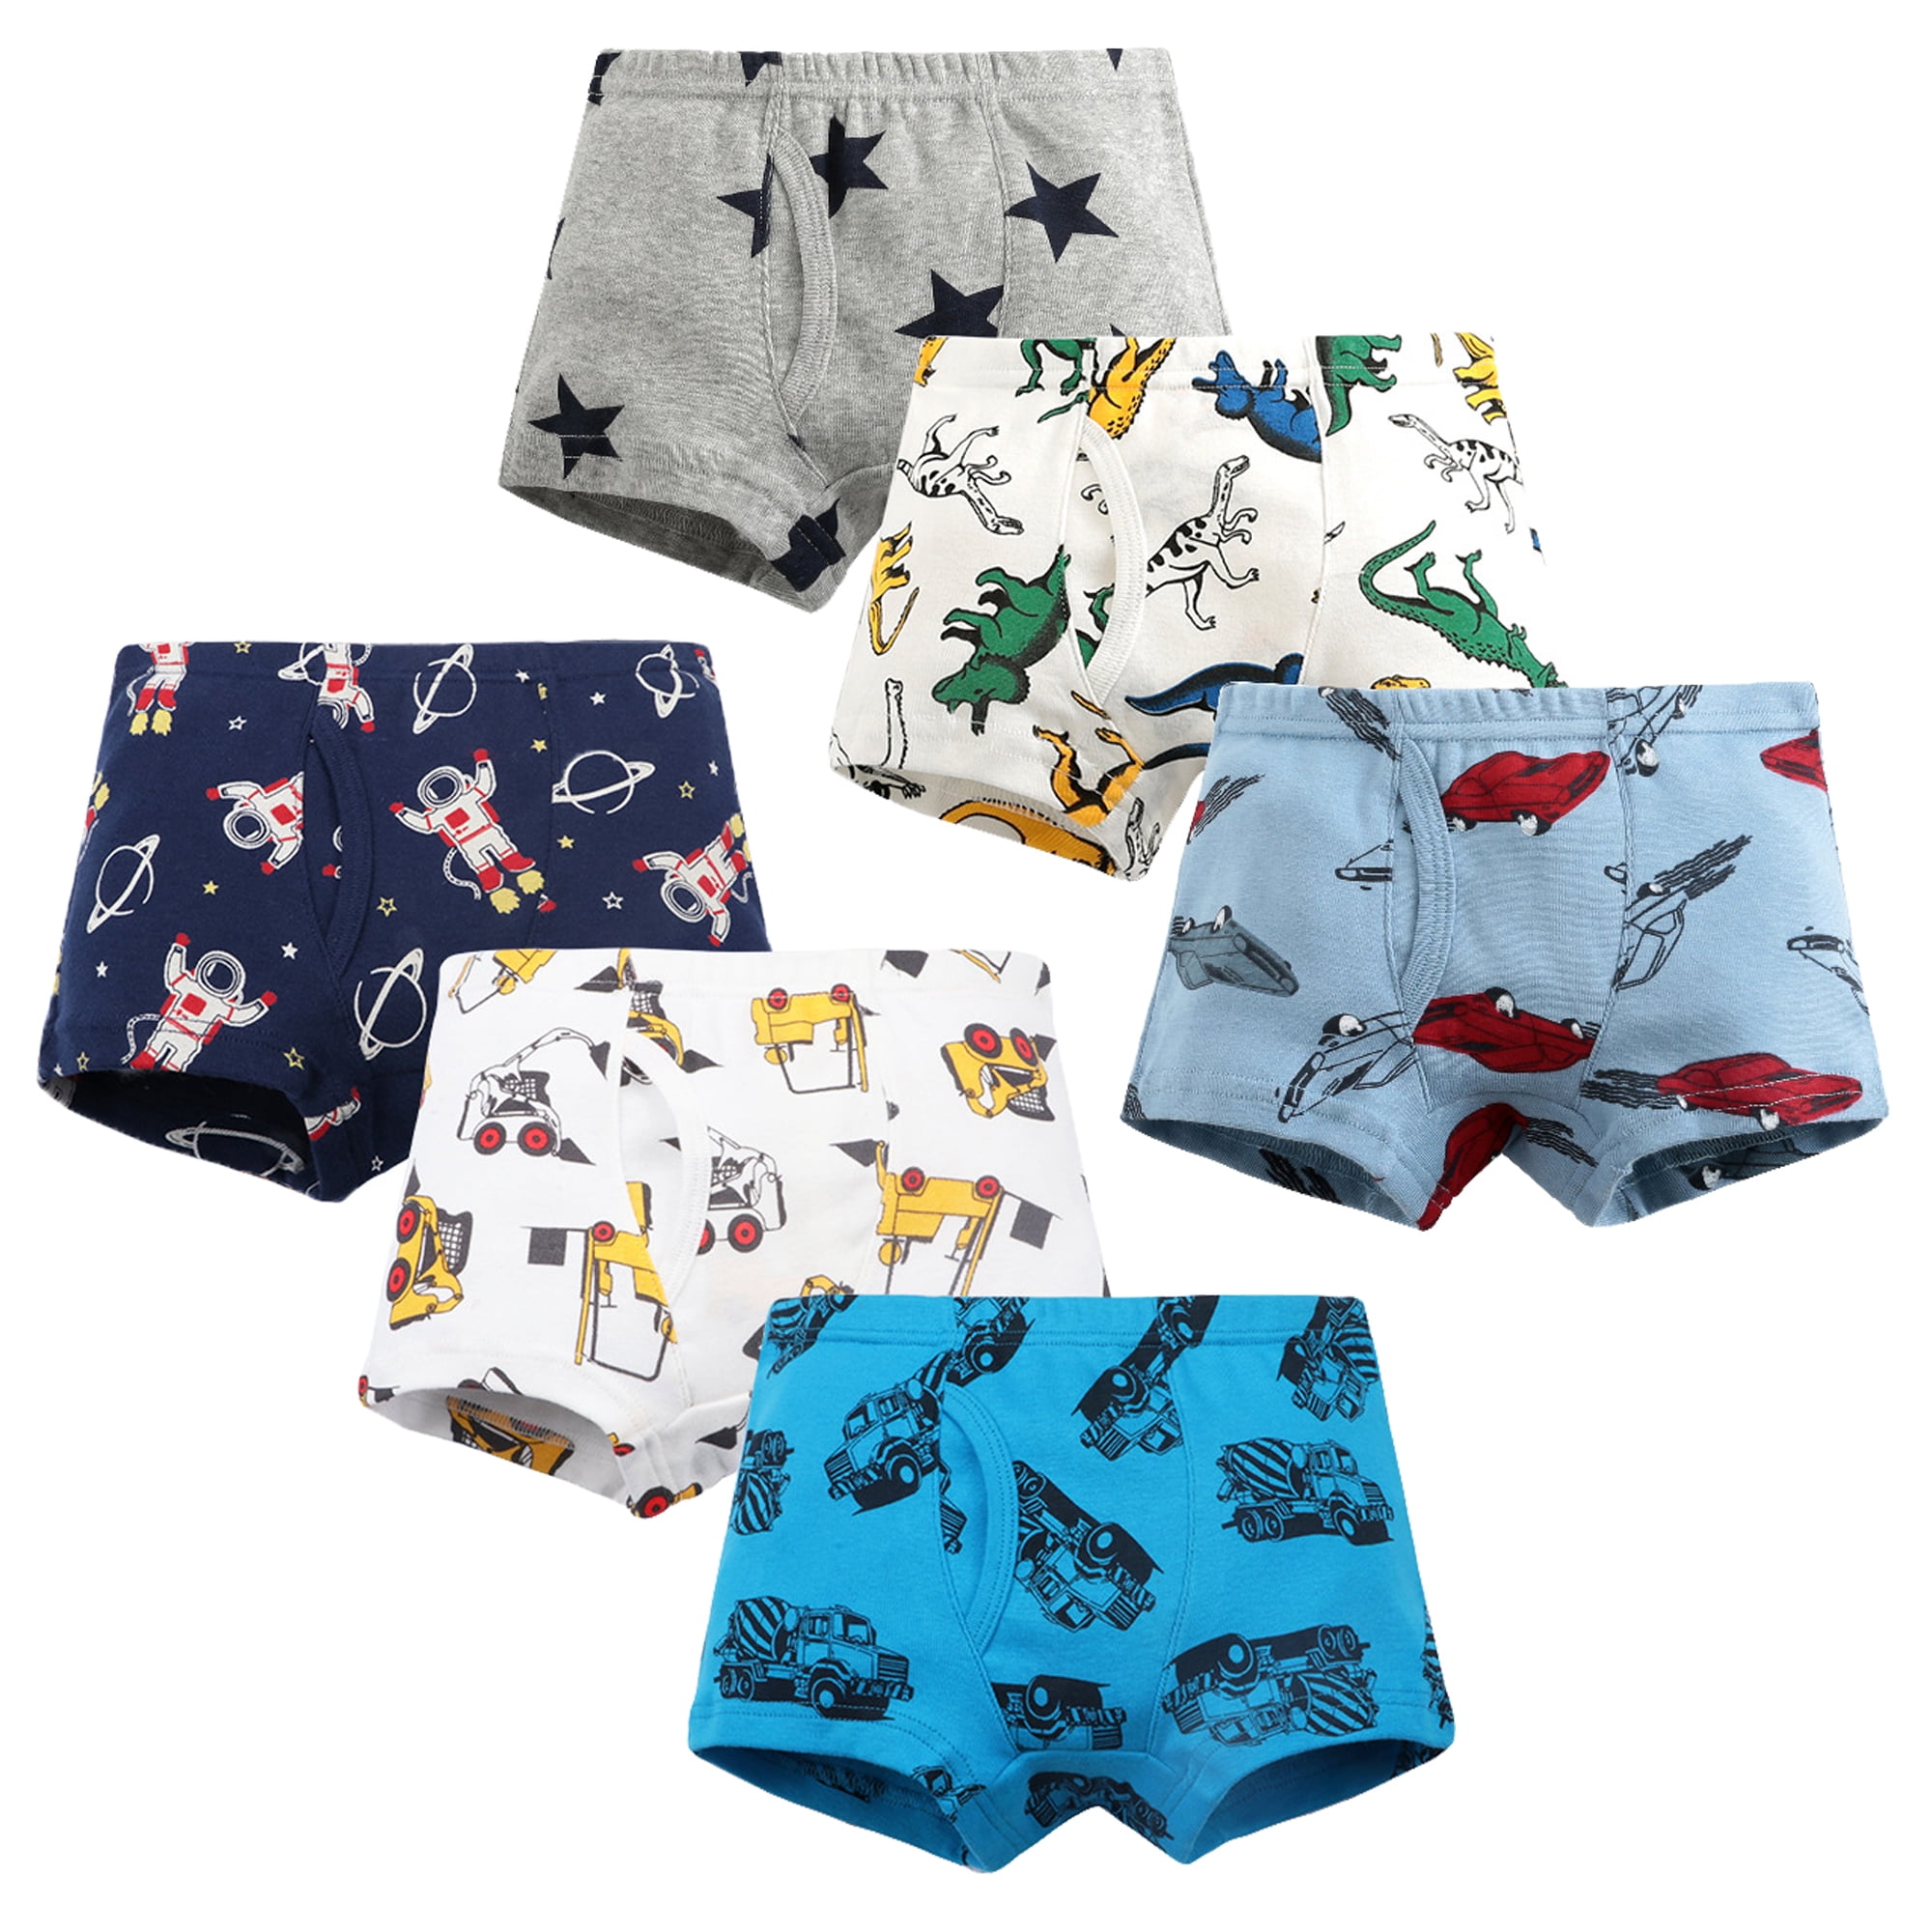 CM-Kid Toddler Boy Dinosaur Underwear Cotton Underpants 6 Pack